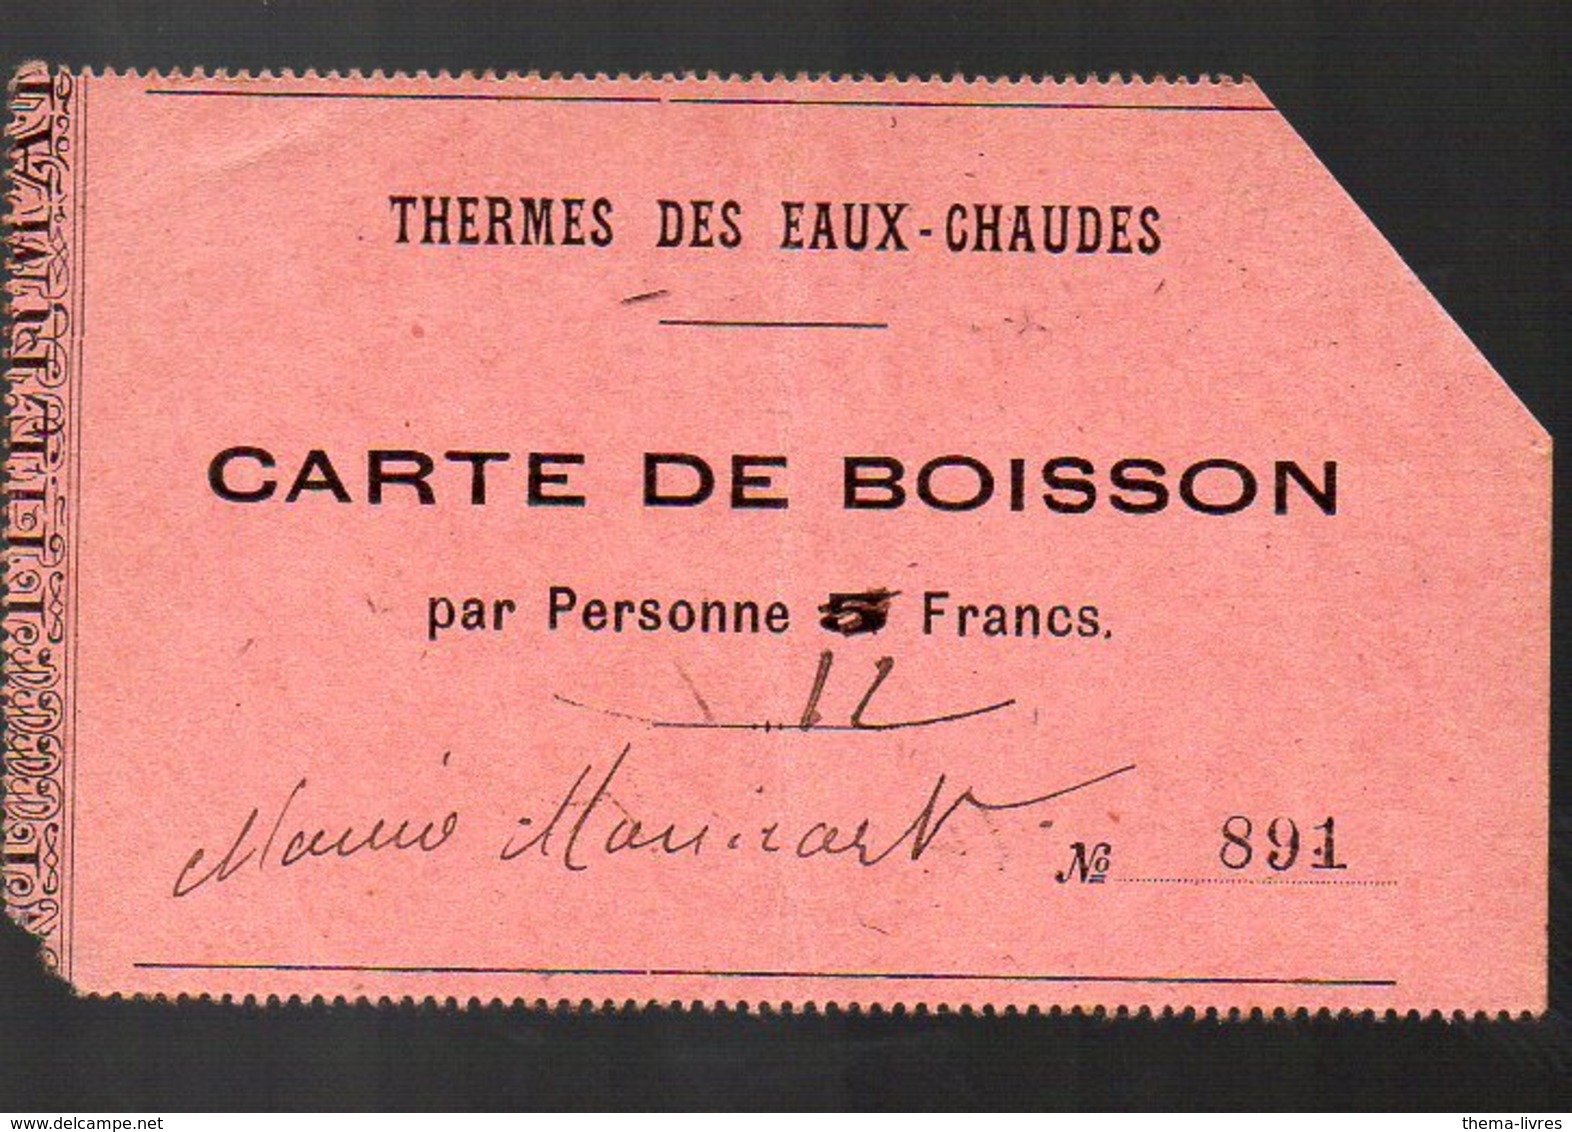 Eaux-Chaudes (65 Hautes Pyrénées) Carte De Boisson (thermes) (PPP12890) - Non Classés